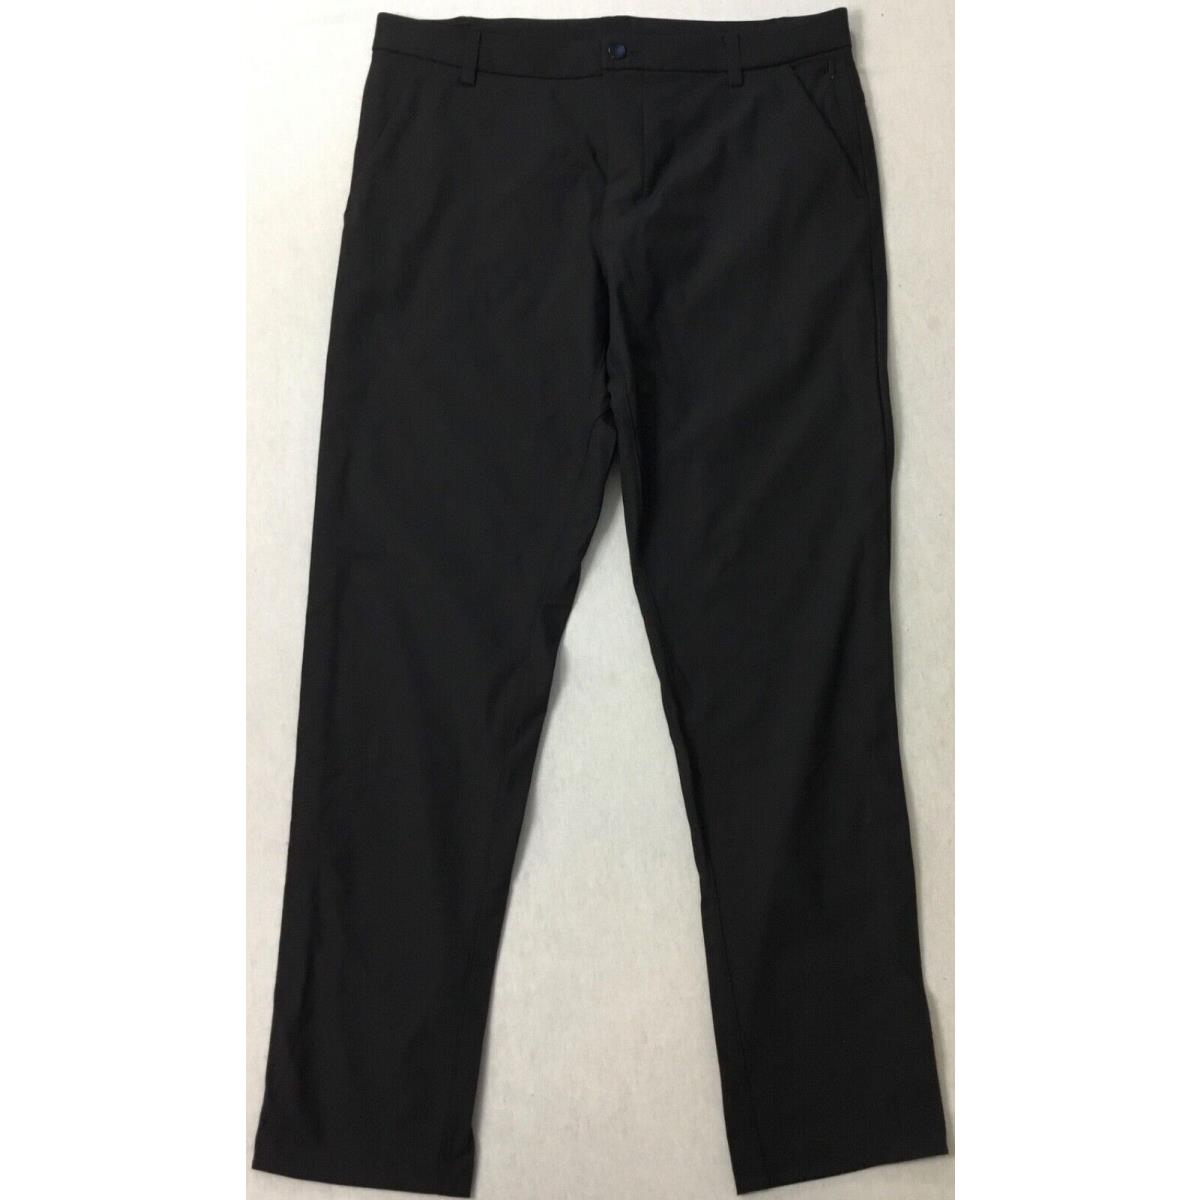 Lululemon Men s Pants Commission Pant Classic 32 Length Black LM5710S Size 34